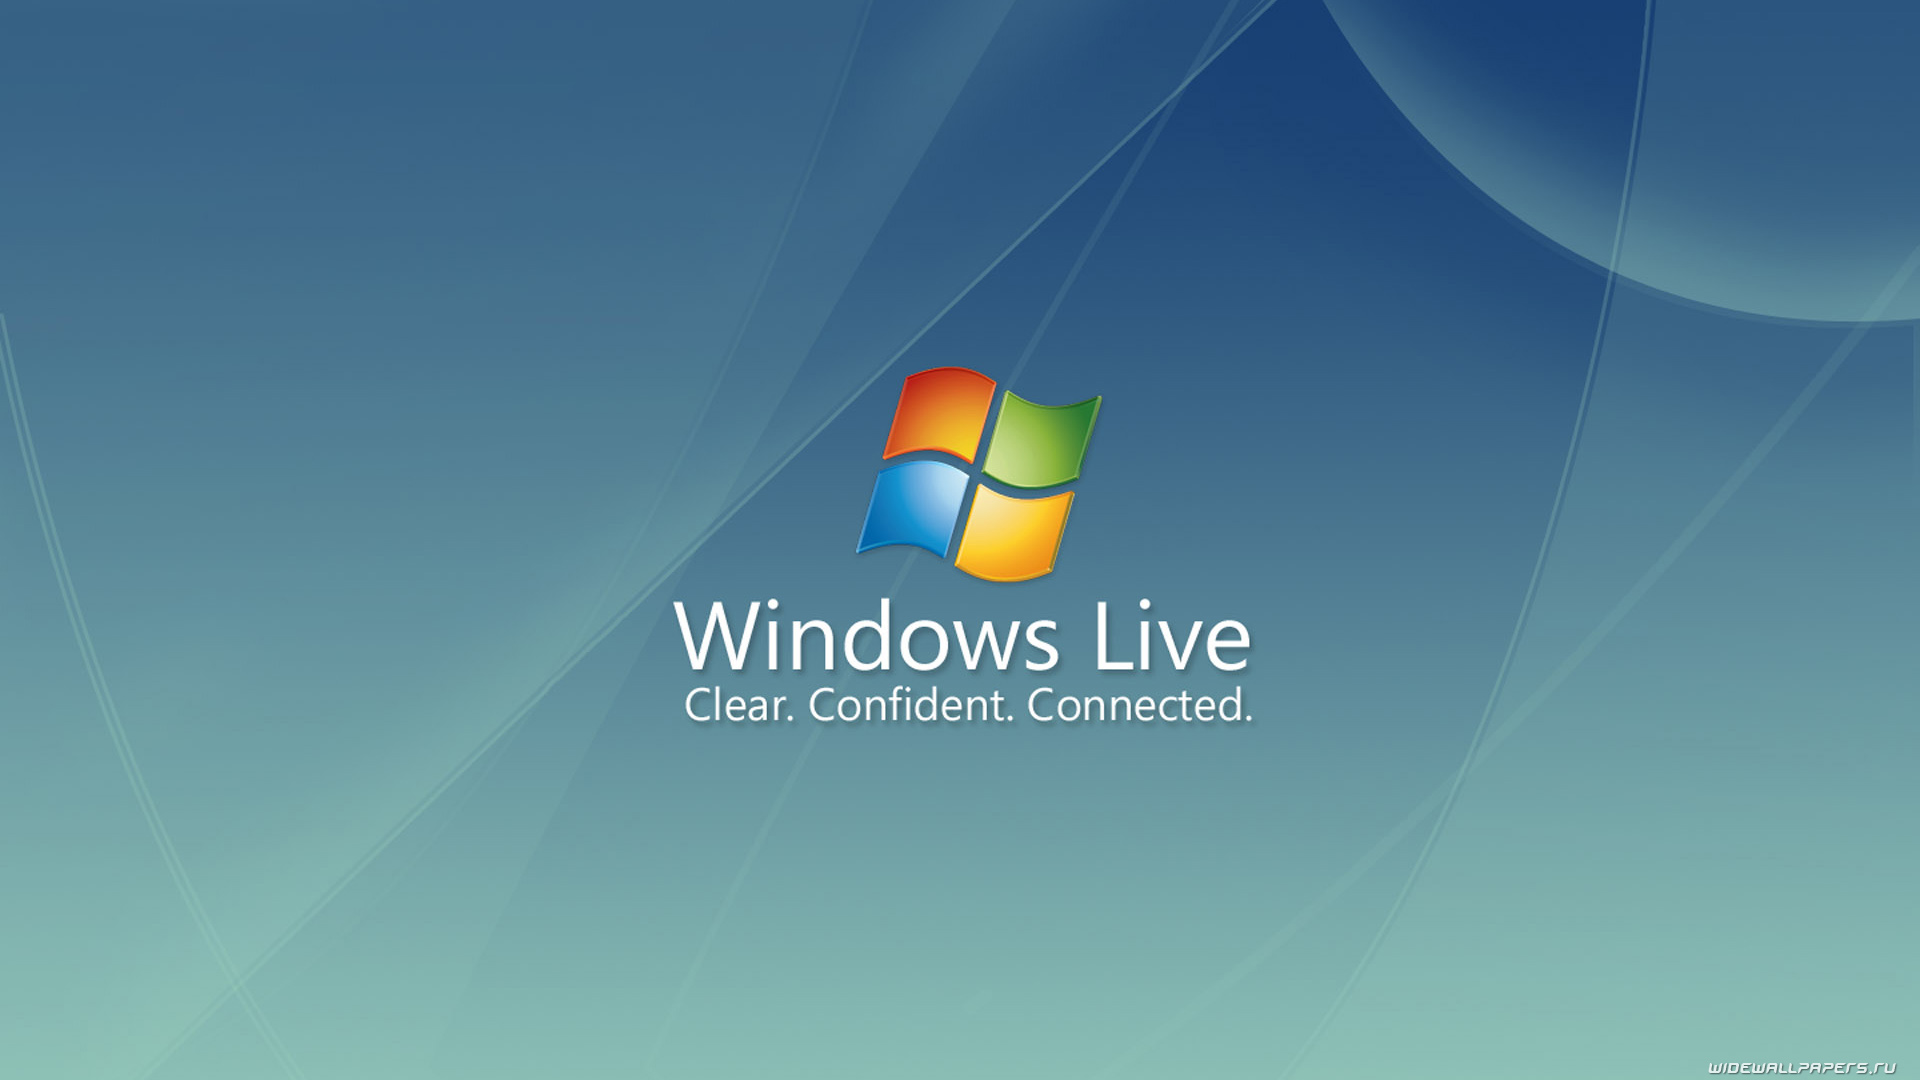 Windows Live Wallpapers HD Wallpaper of Windows   hdwallpaper2013com 1920x1080